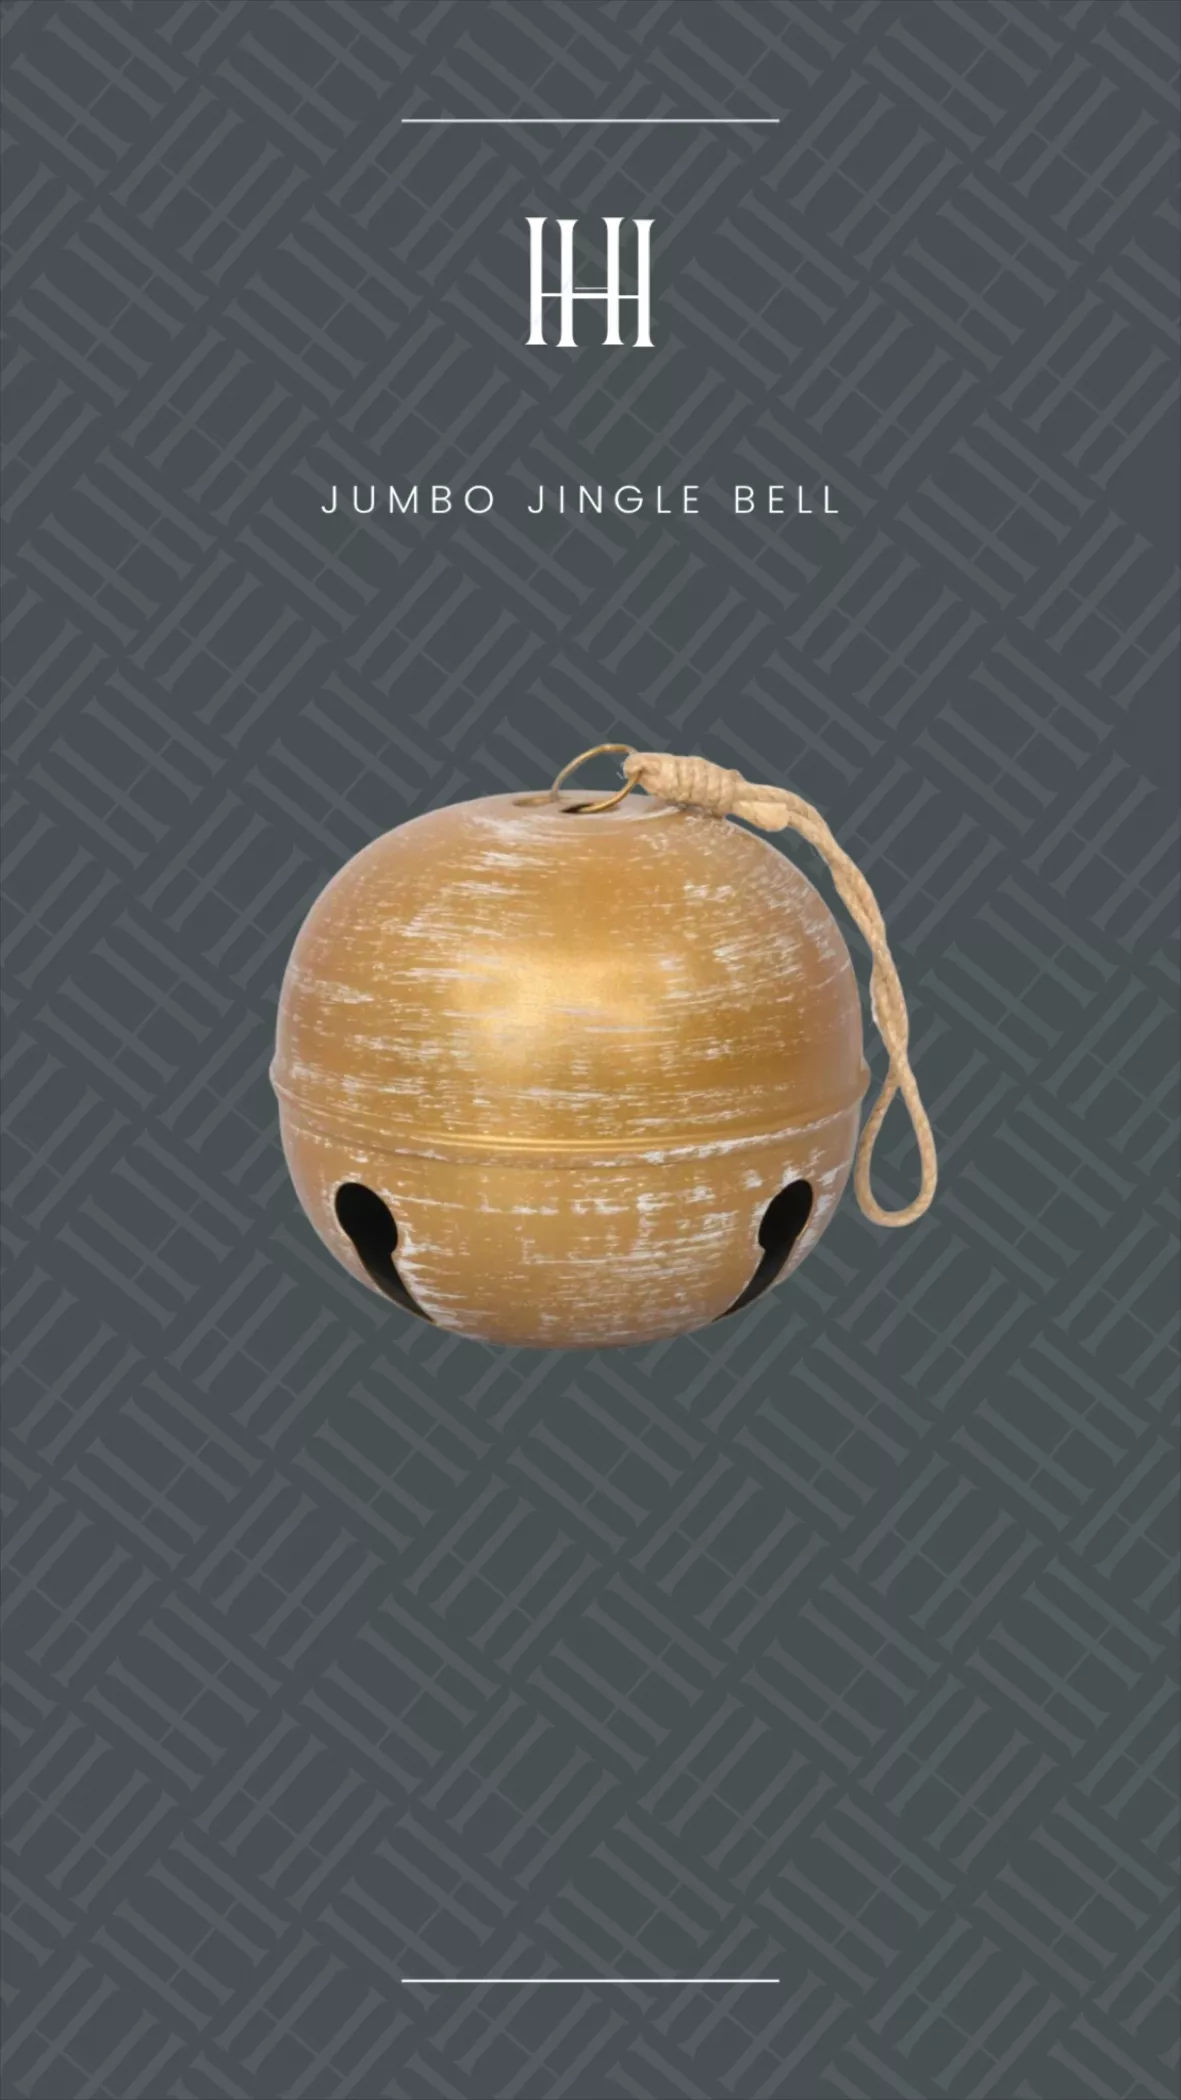 Giant Jingle Bell 